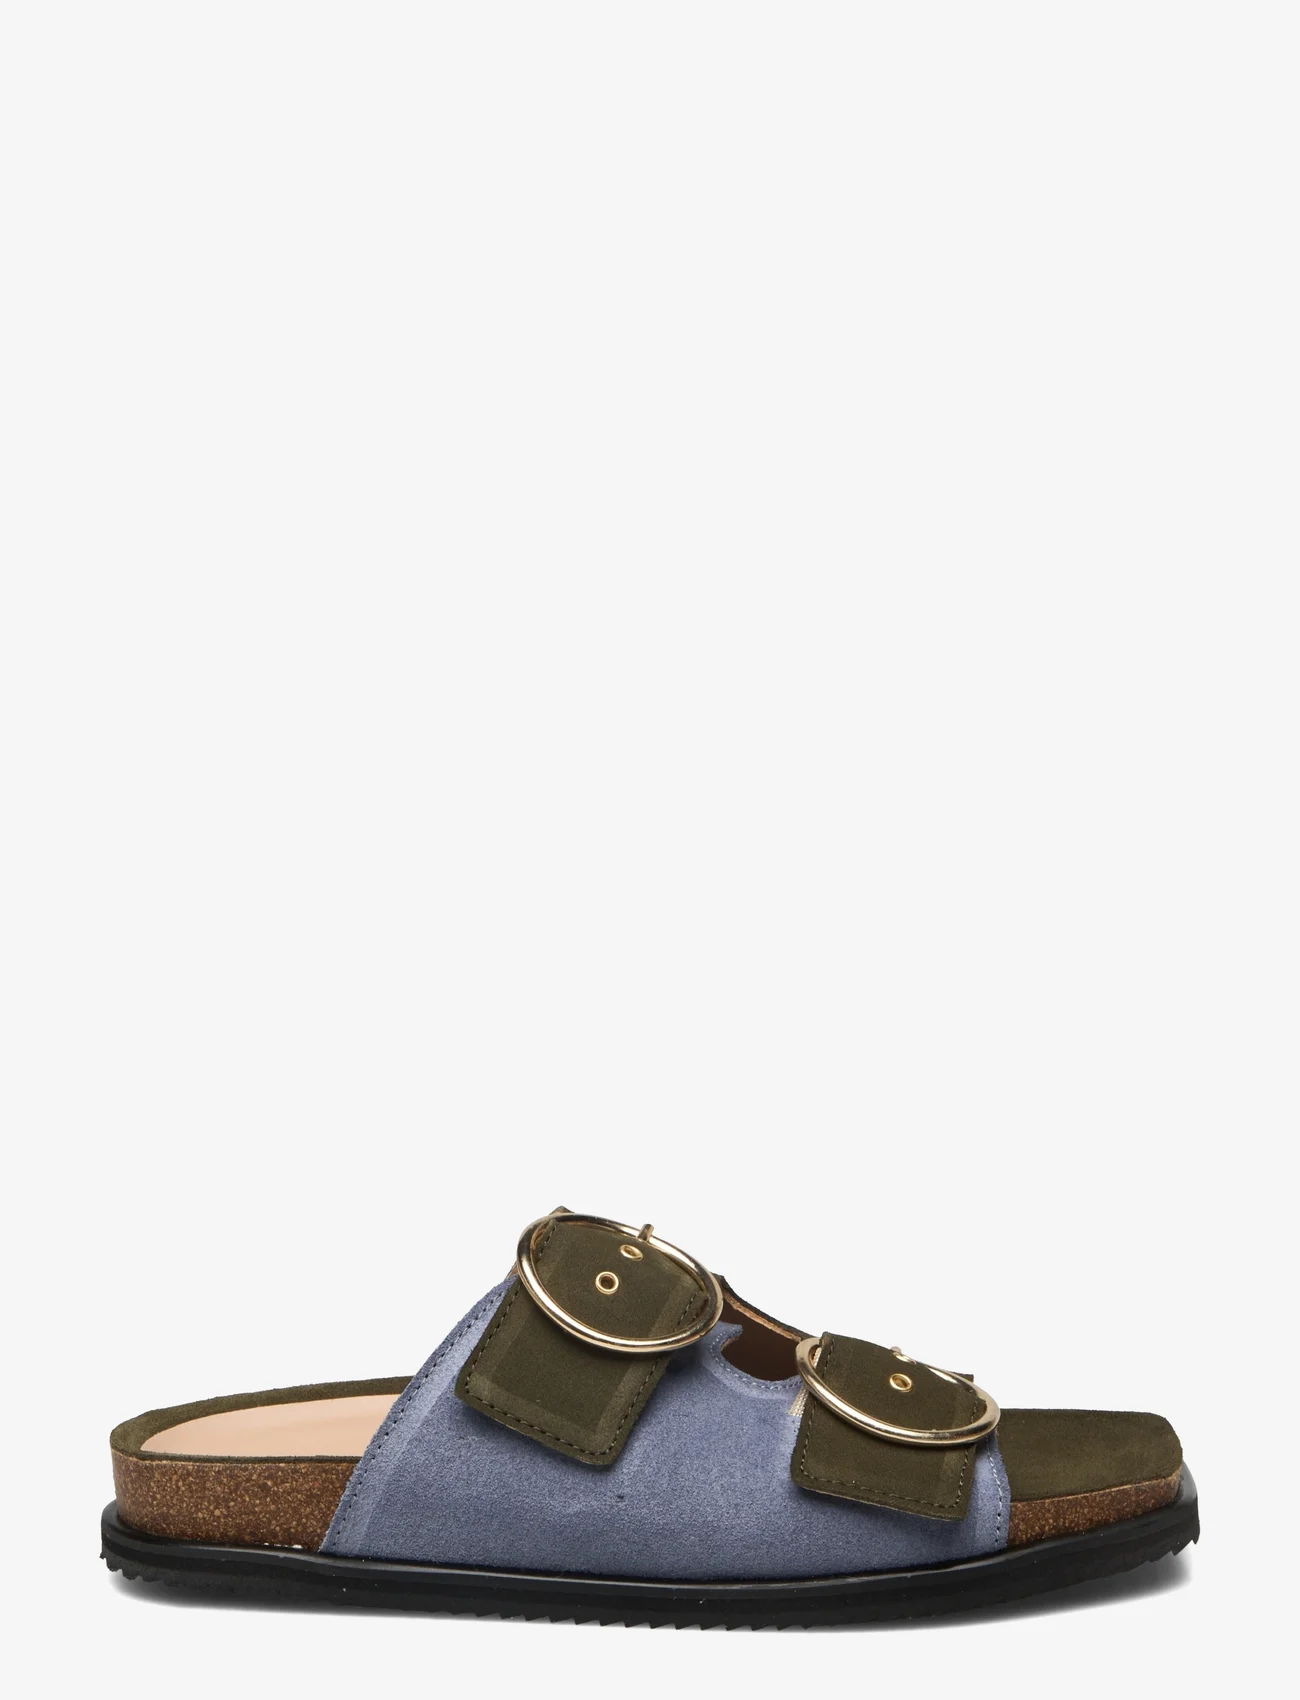 ANGULUS - Sandals - flat - open toe - op - zempapēžu sandales - 2244/2242 light blue/green - 1